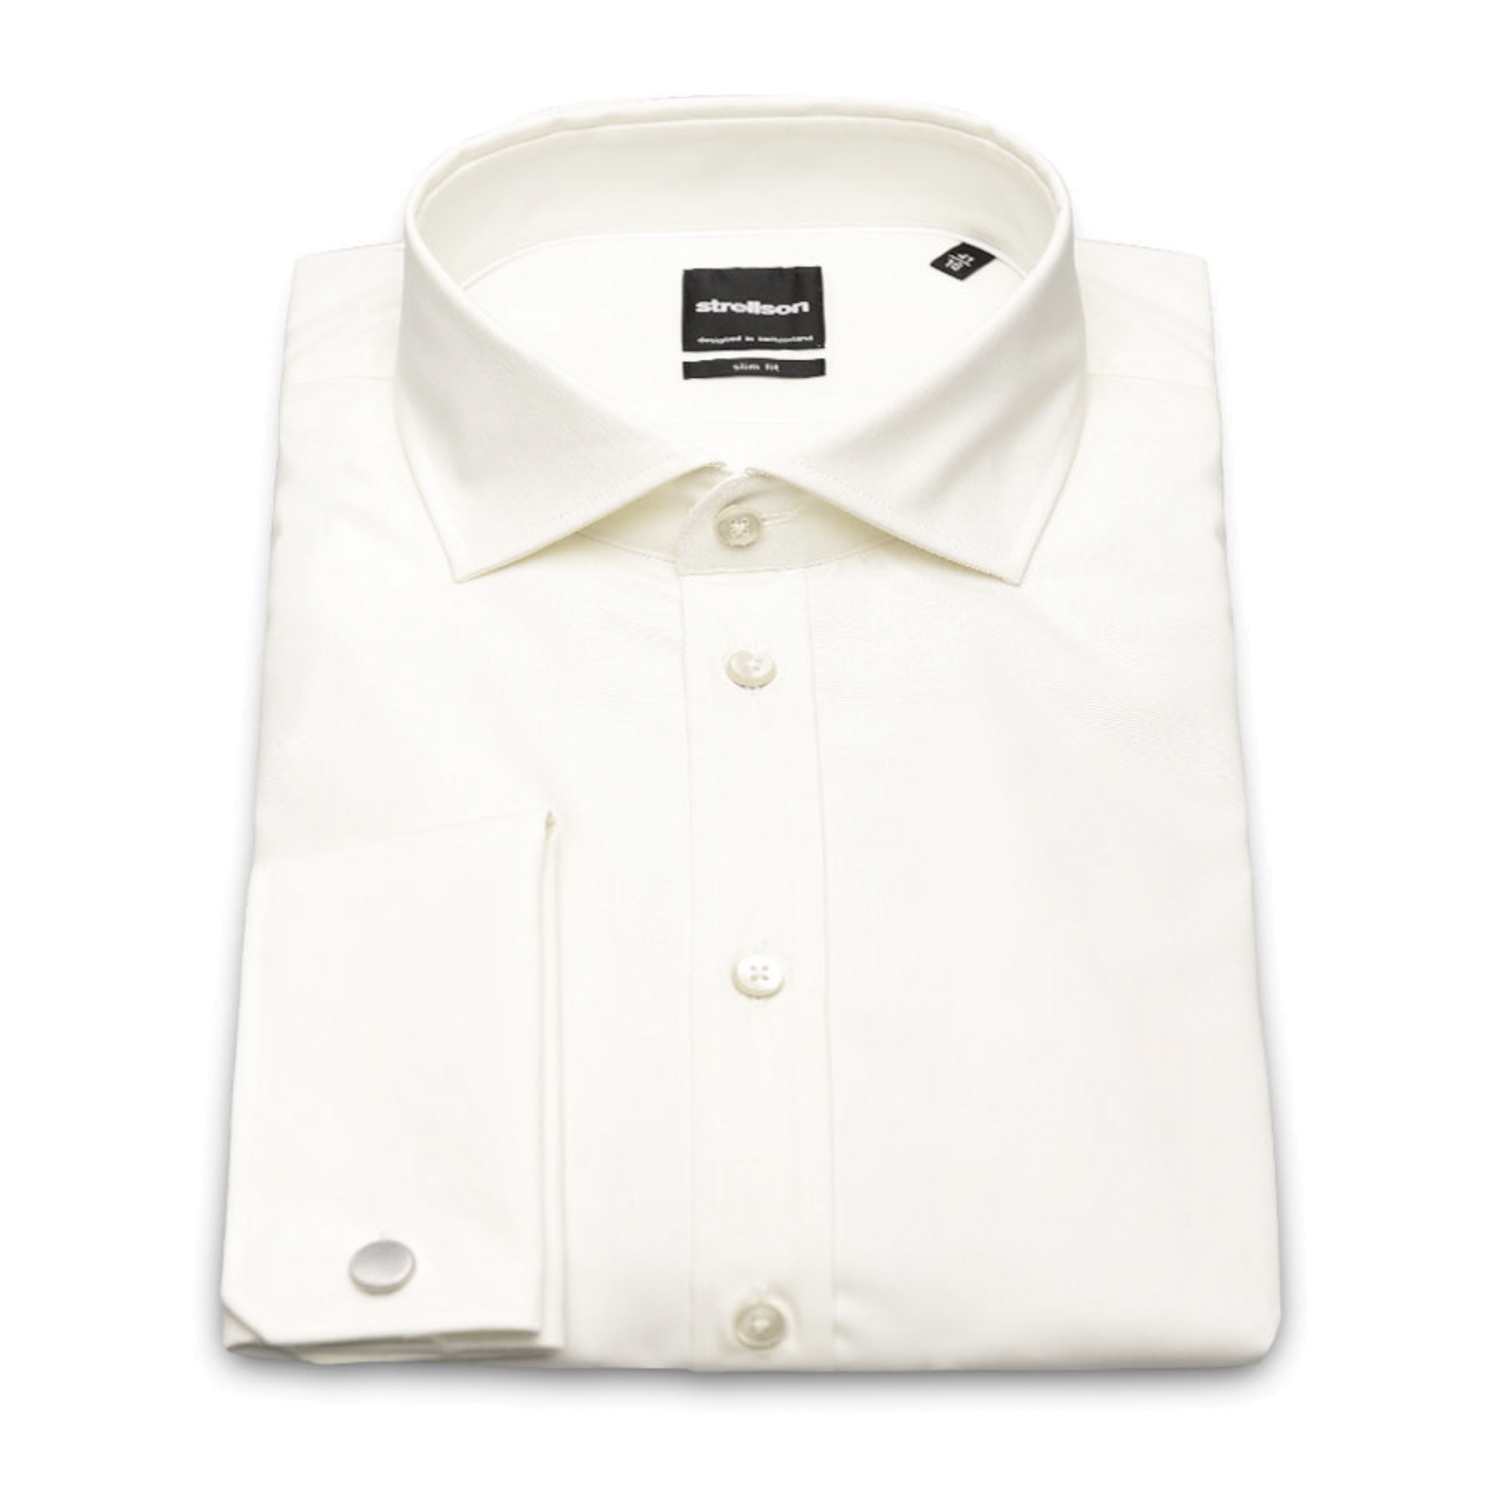 dwaas Lao Bisschop Off White overhemd met dubbelmanchet en normale mouwlengte (65cm) van het  merk Strellson 1101662/199 JAMUE UMA Off White